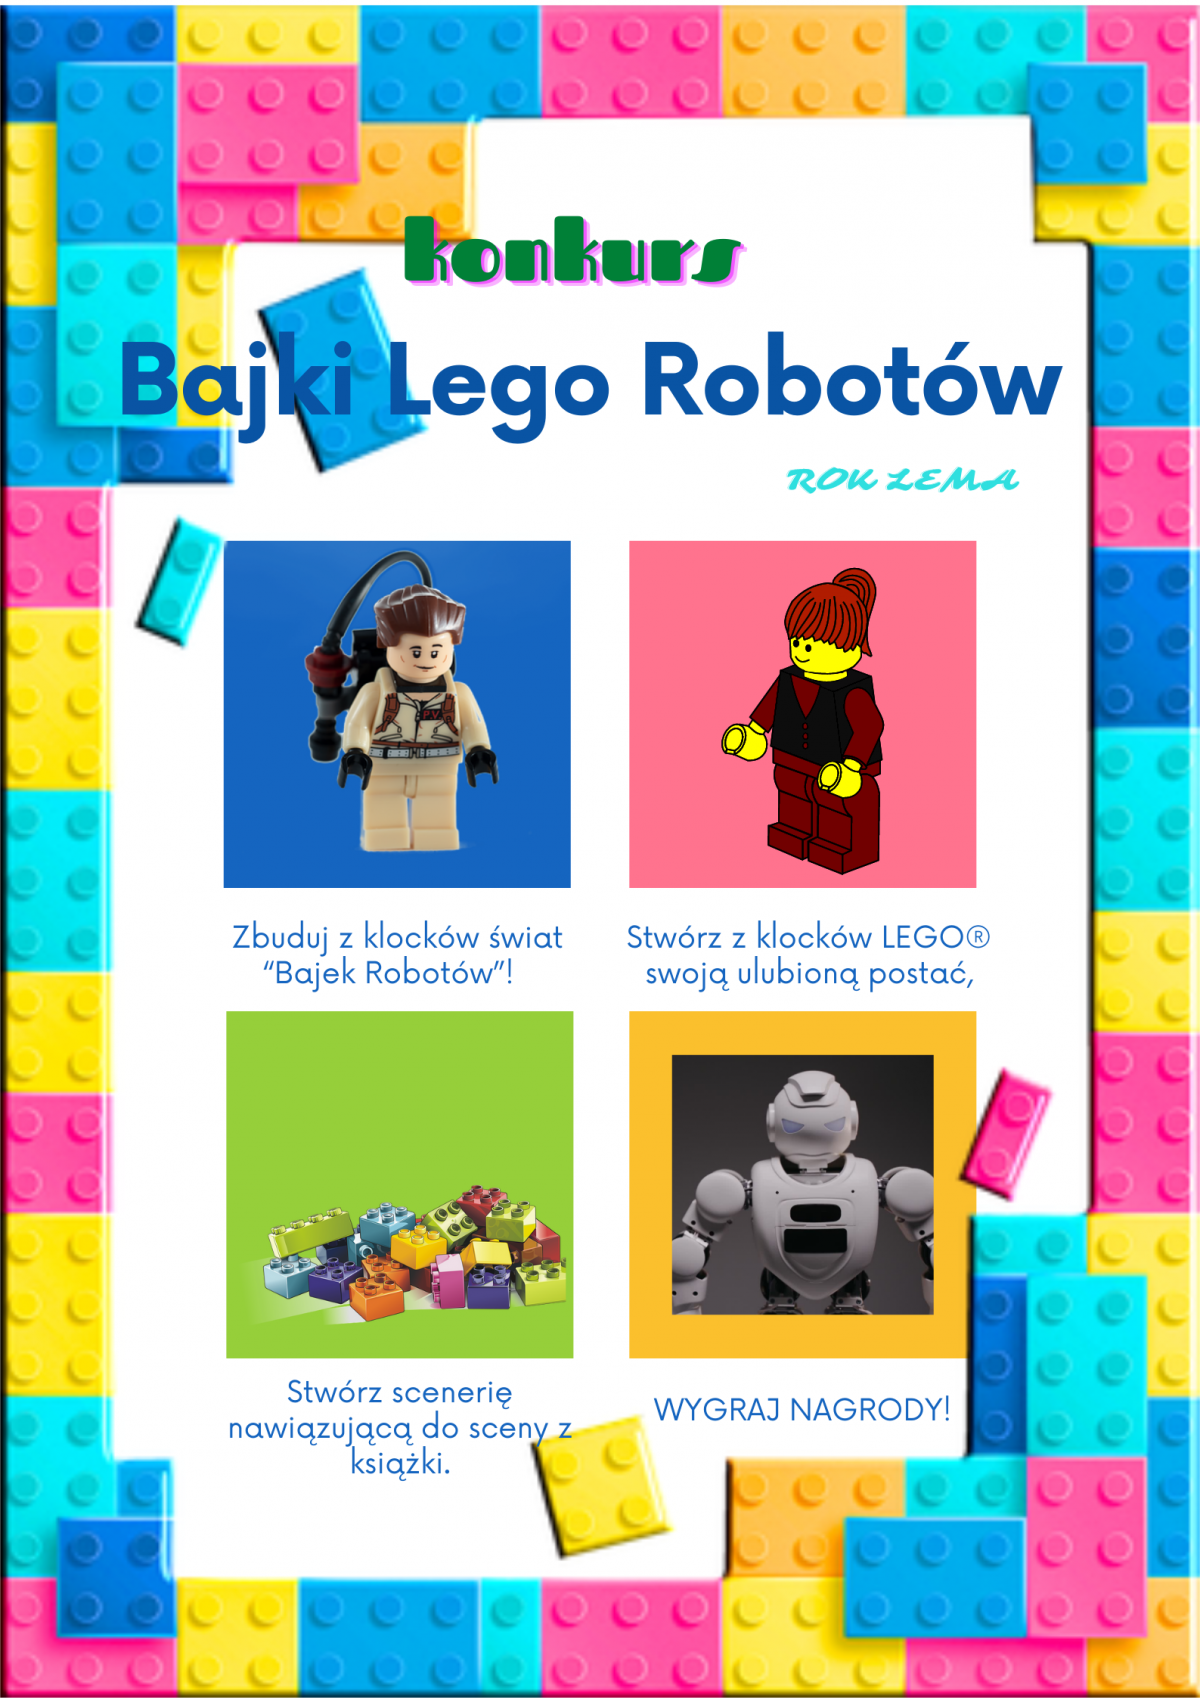 Ramka plakatu z kolorowych klocków lego na środku cztery kolorowe kwadraty z ludzikami lego i klockami, pod spodem krótki opis konkursu, na górze tytuł:Konkurs Bajki Lego robotów